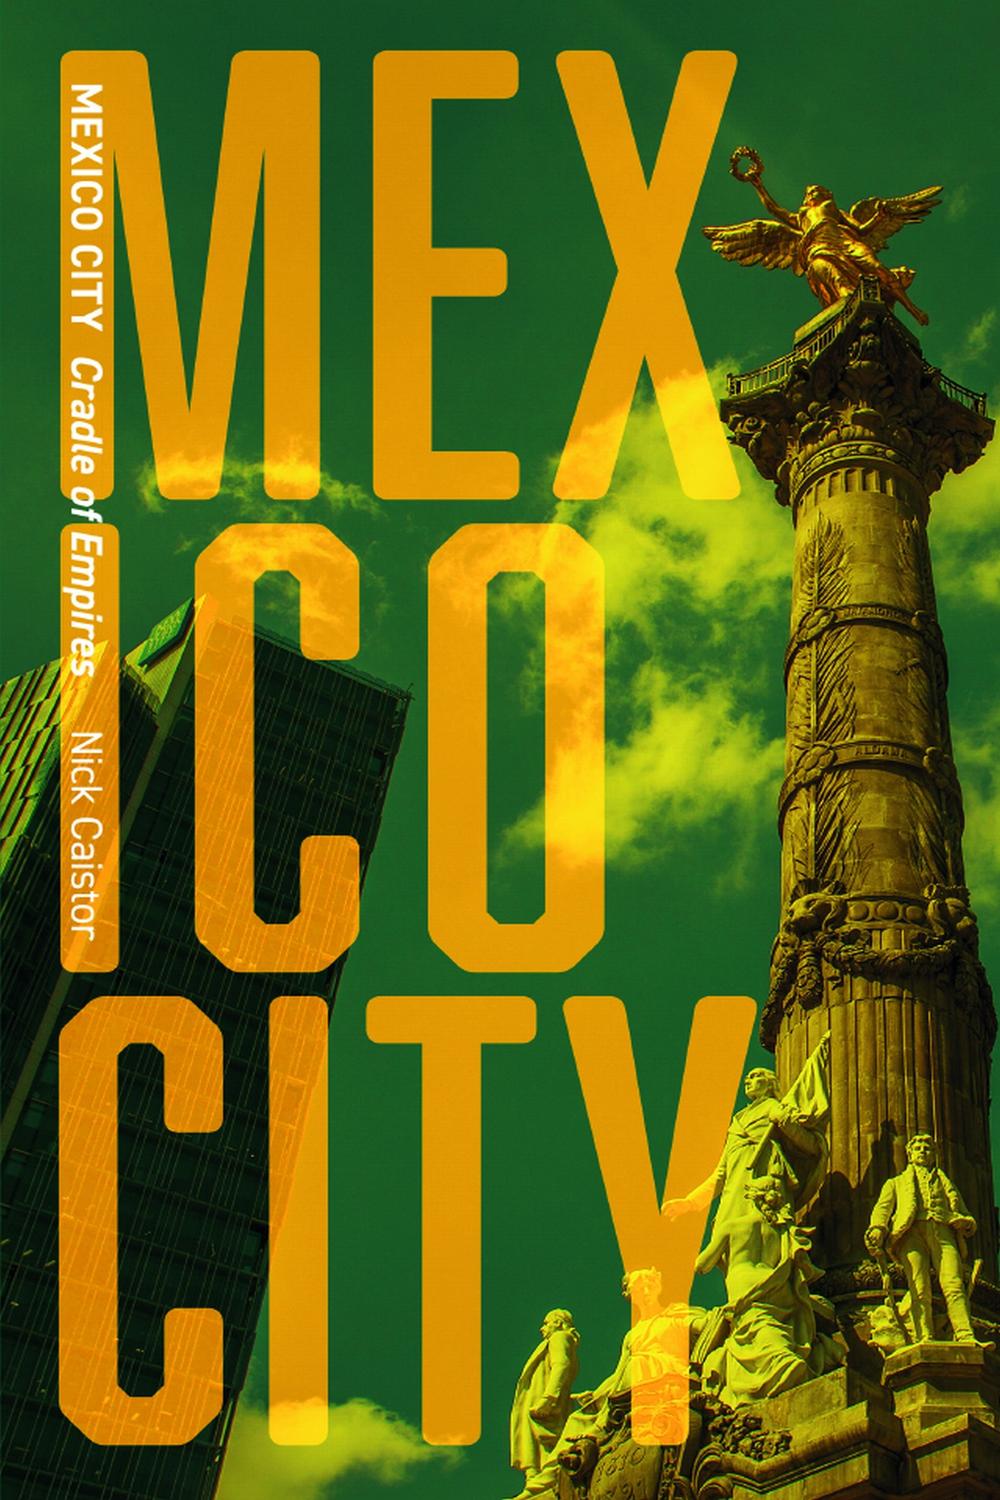 Mexico City - Nicholas Caistor